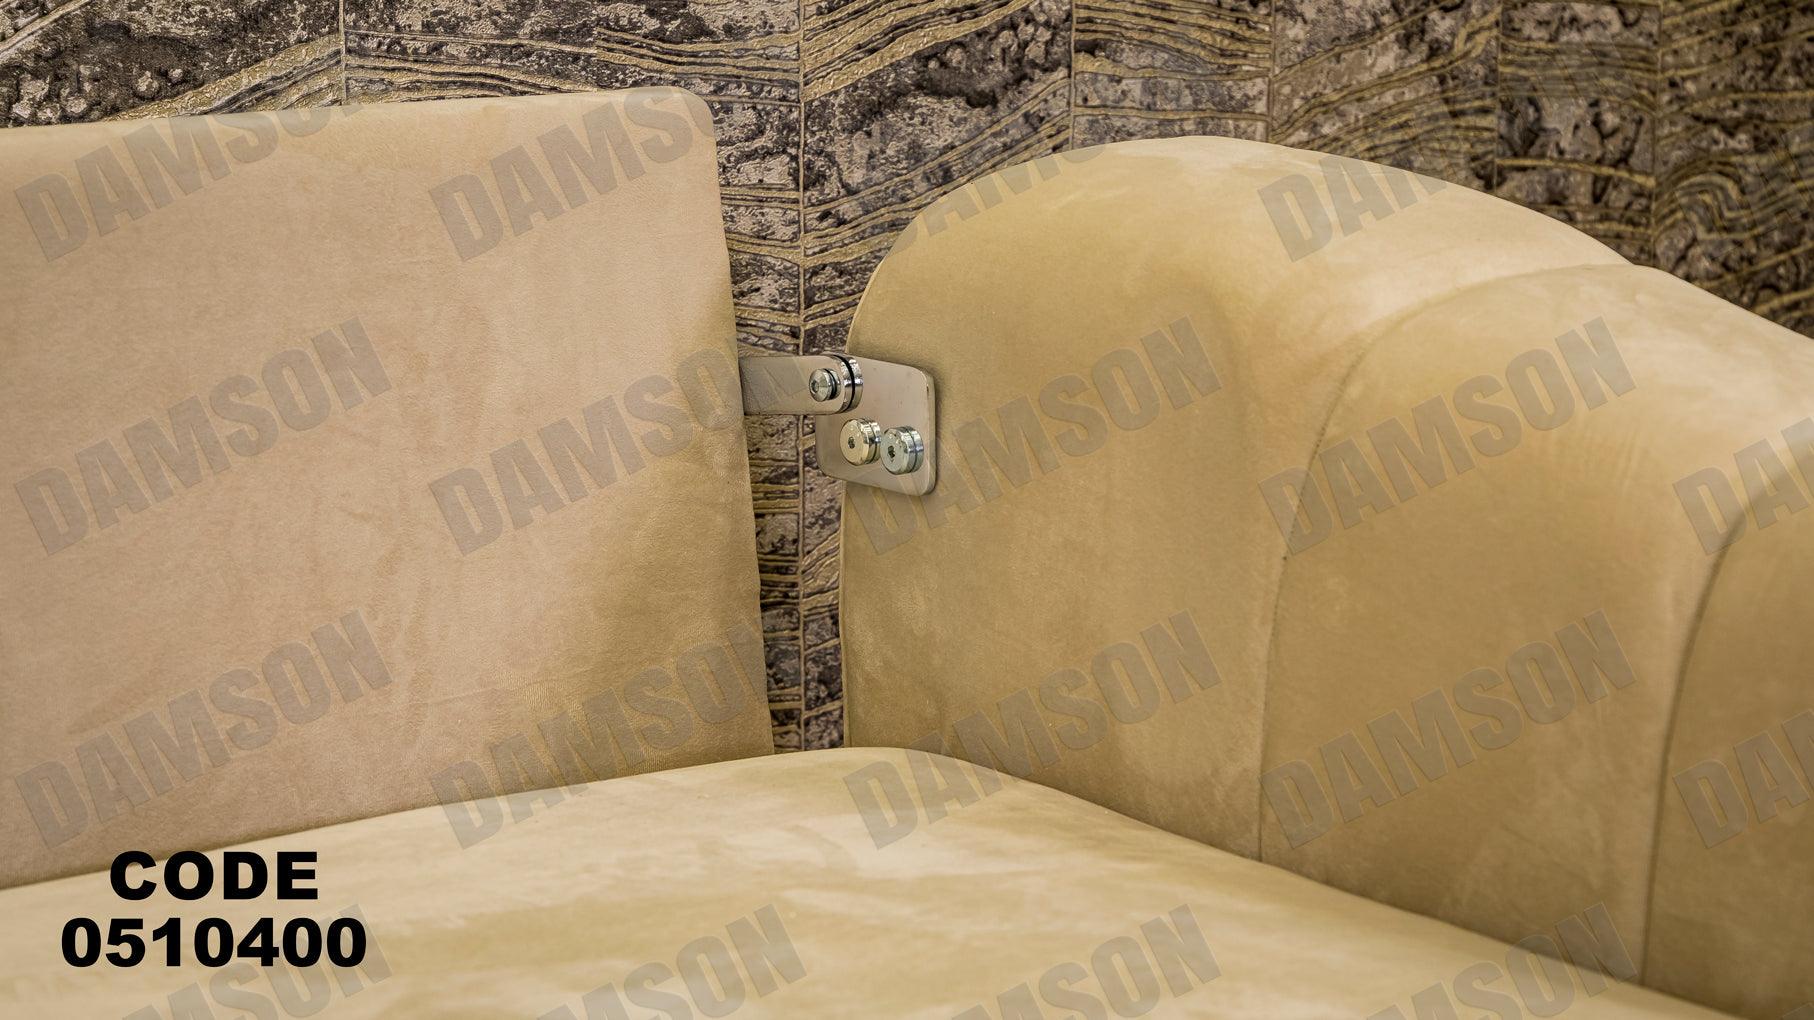 انترية سرير 104 - Damson Furnitureانترية سرير 104